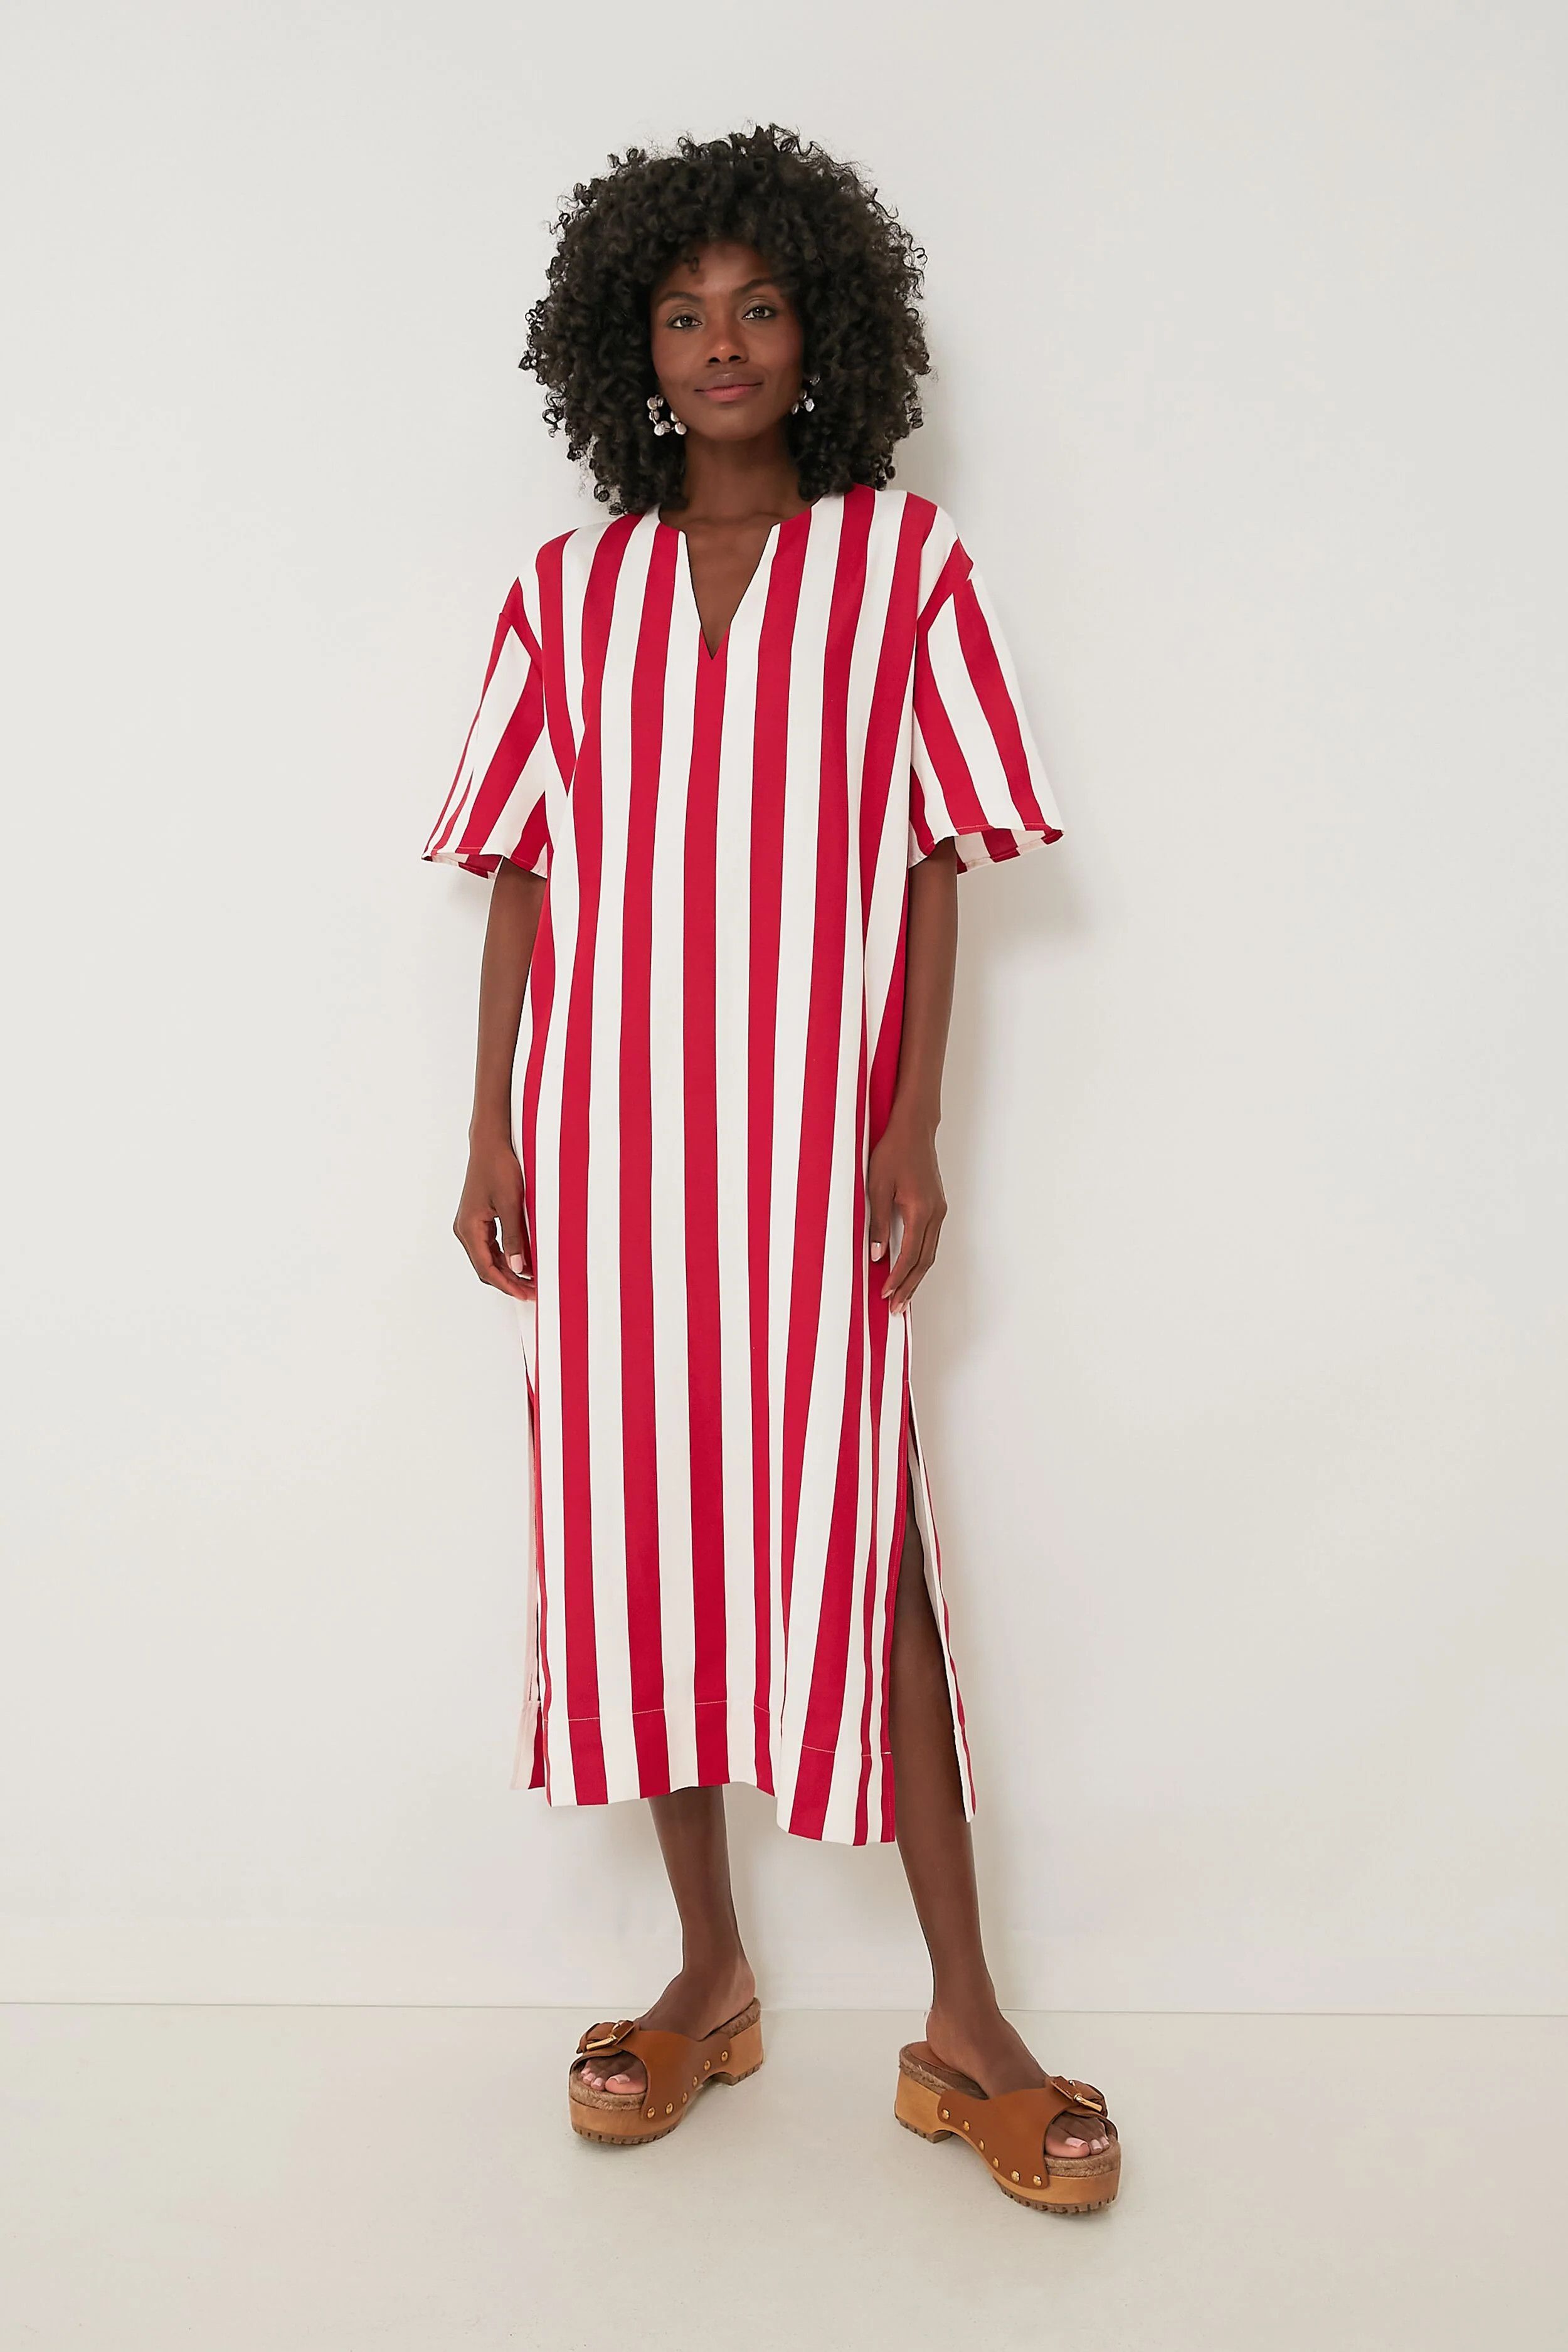 Red Stripe Canaan Dress | July Fourth Outfits | Tuckernuck | Red Dress #LTKU #LTKFind #LTKstyletip | Tuckernuck (US)